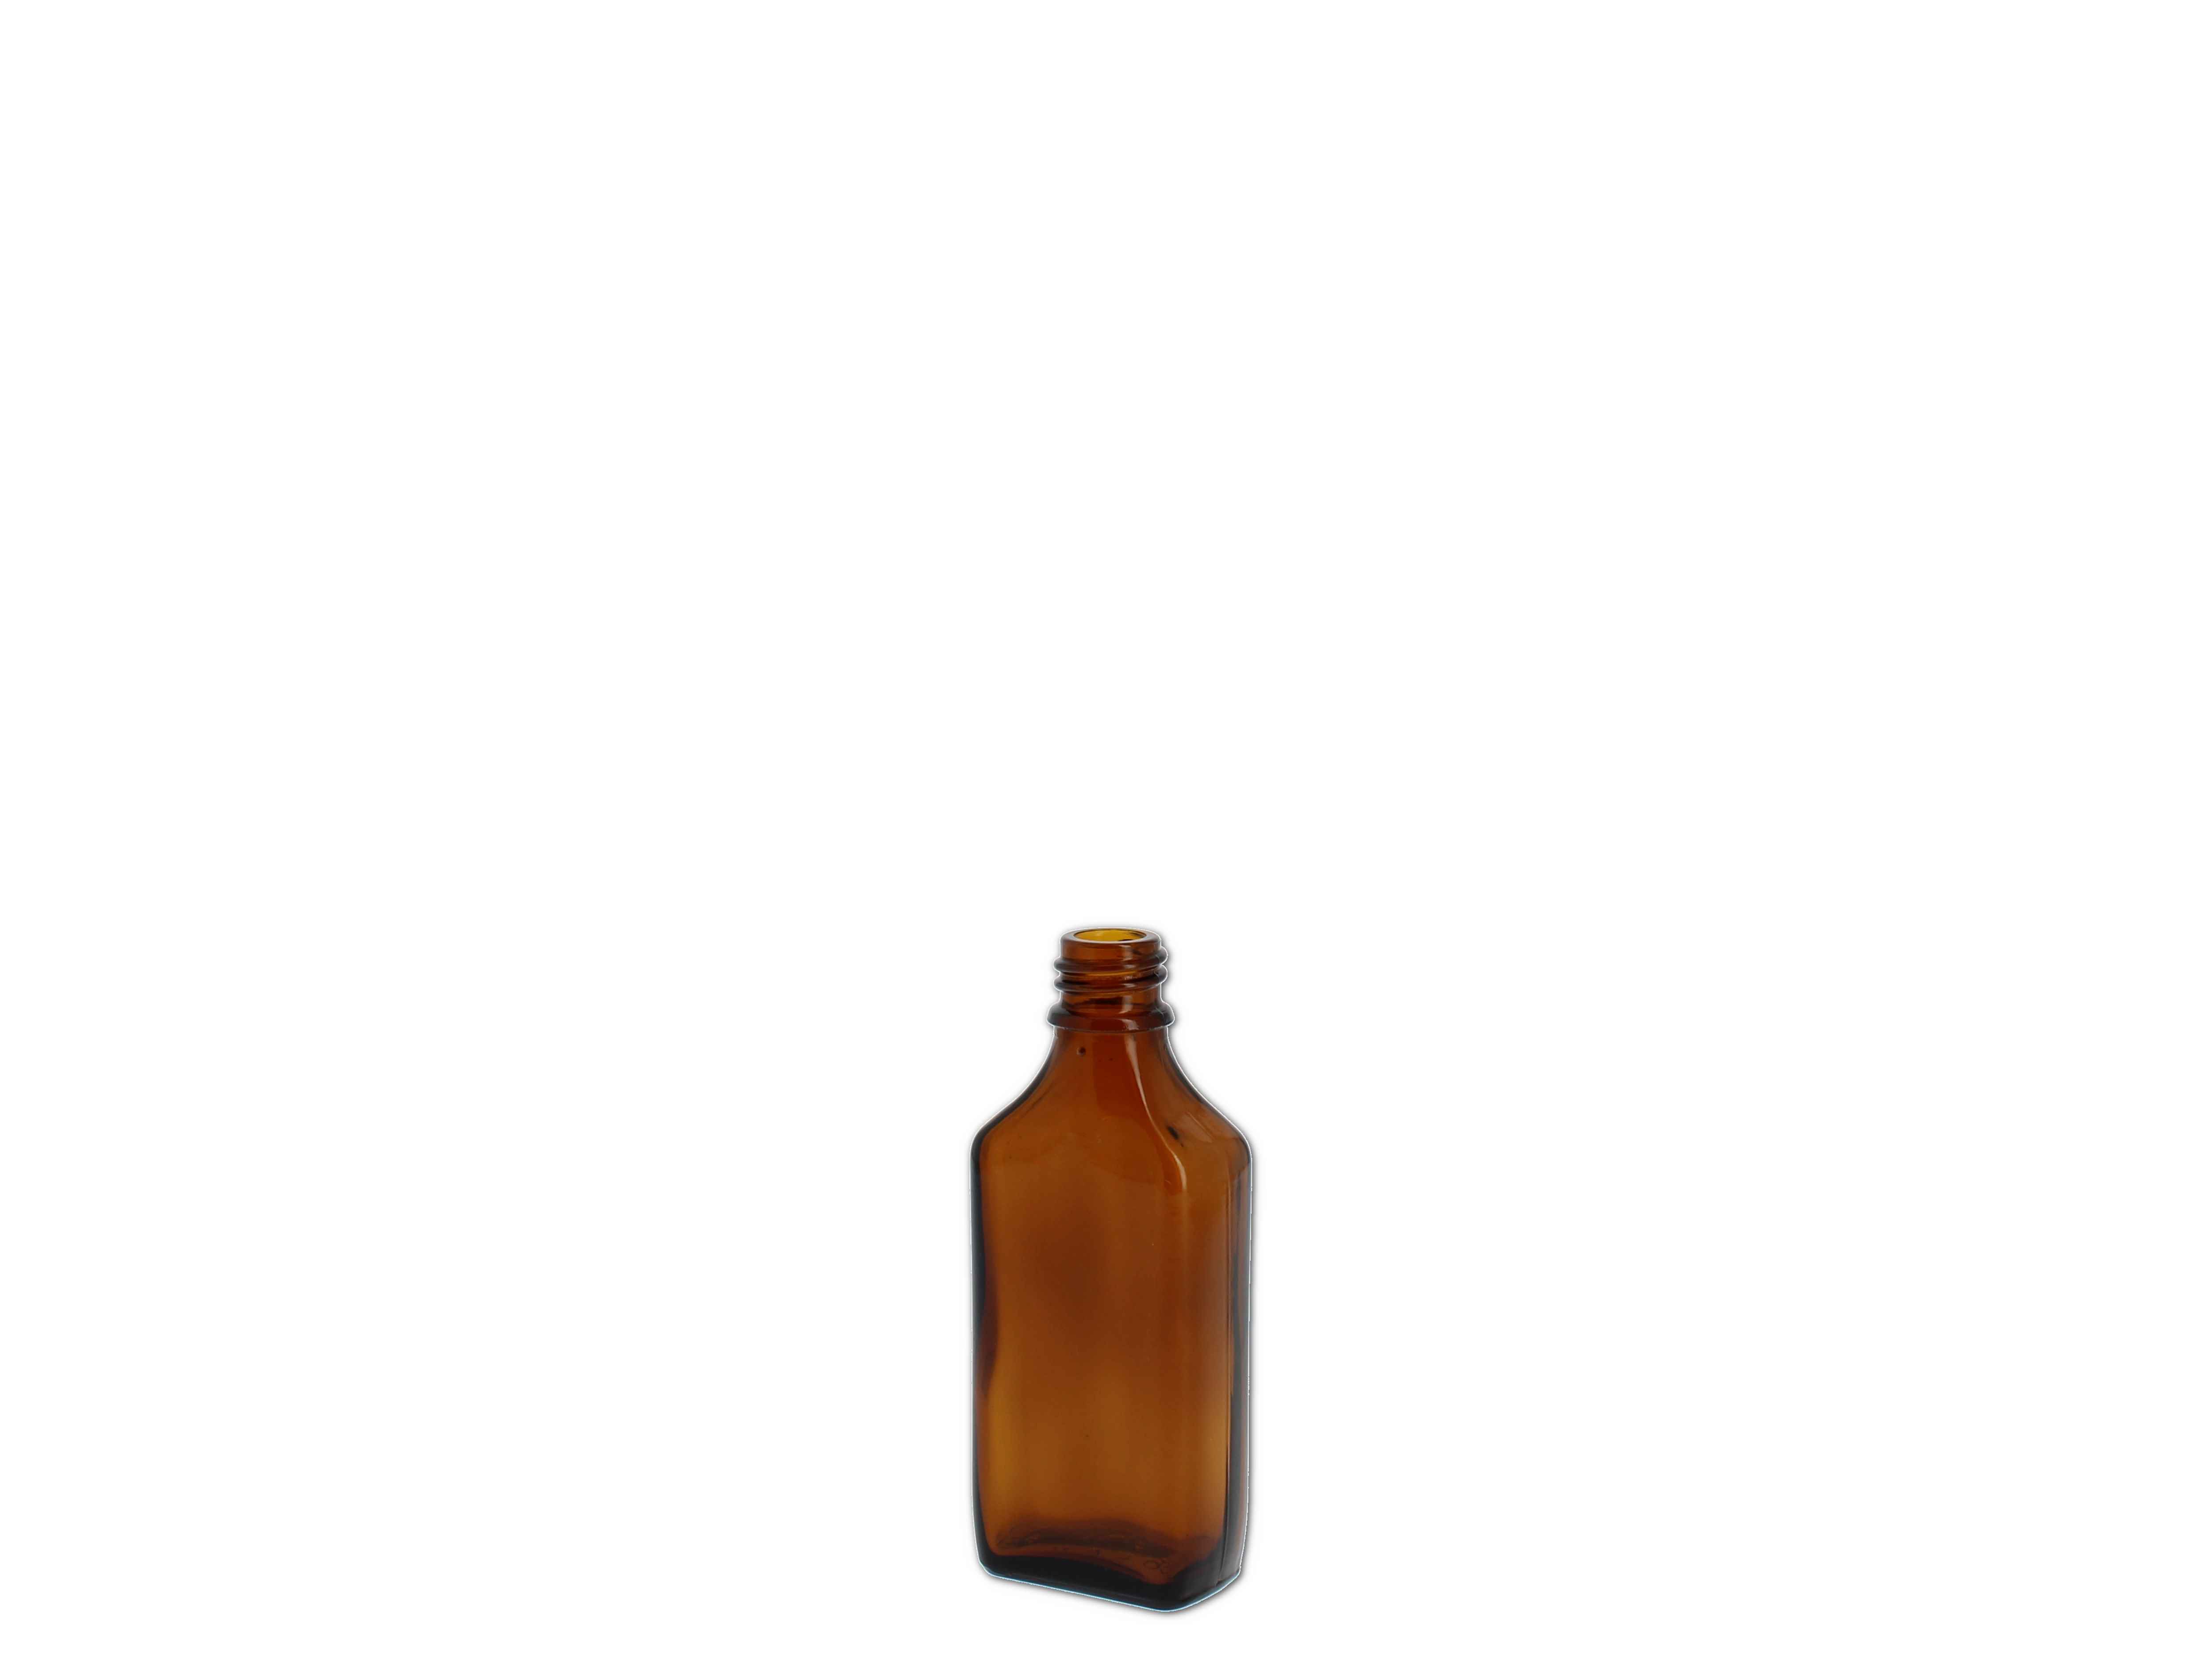    Formflasche braun, Typ 566 (73975) - GL18 - 50ml